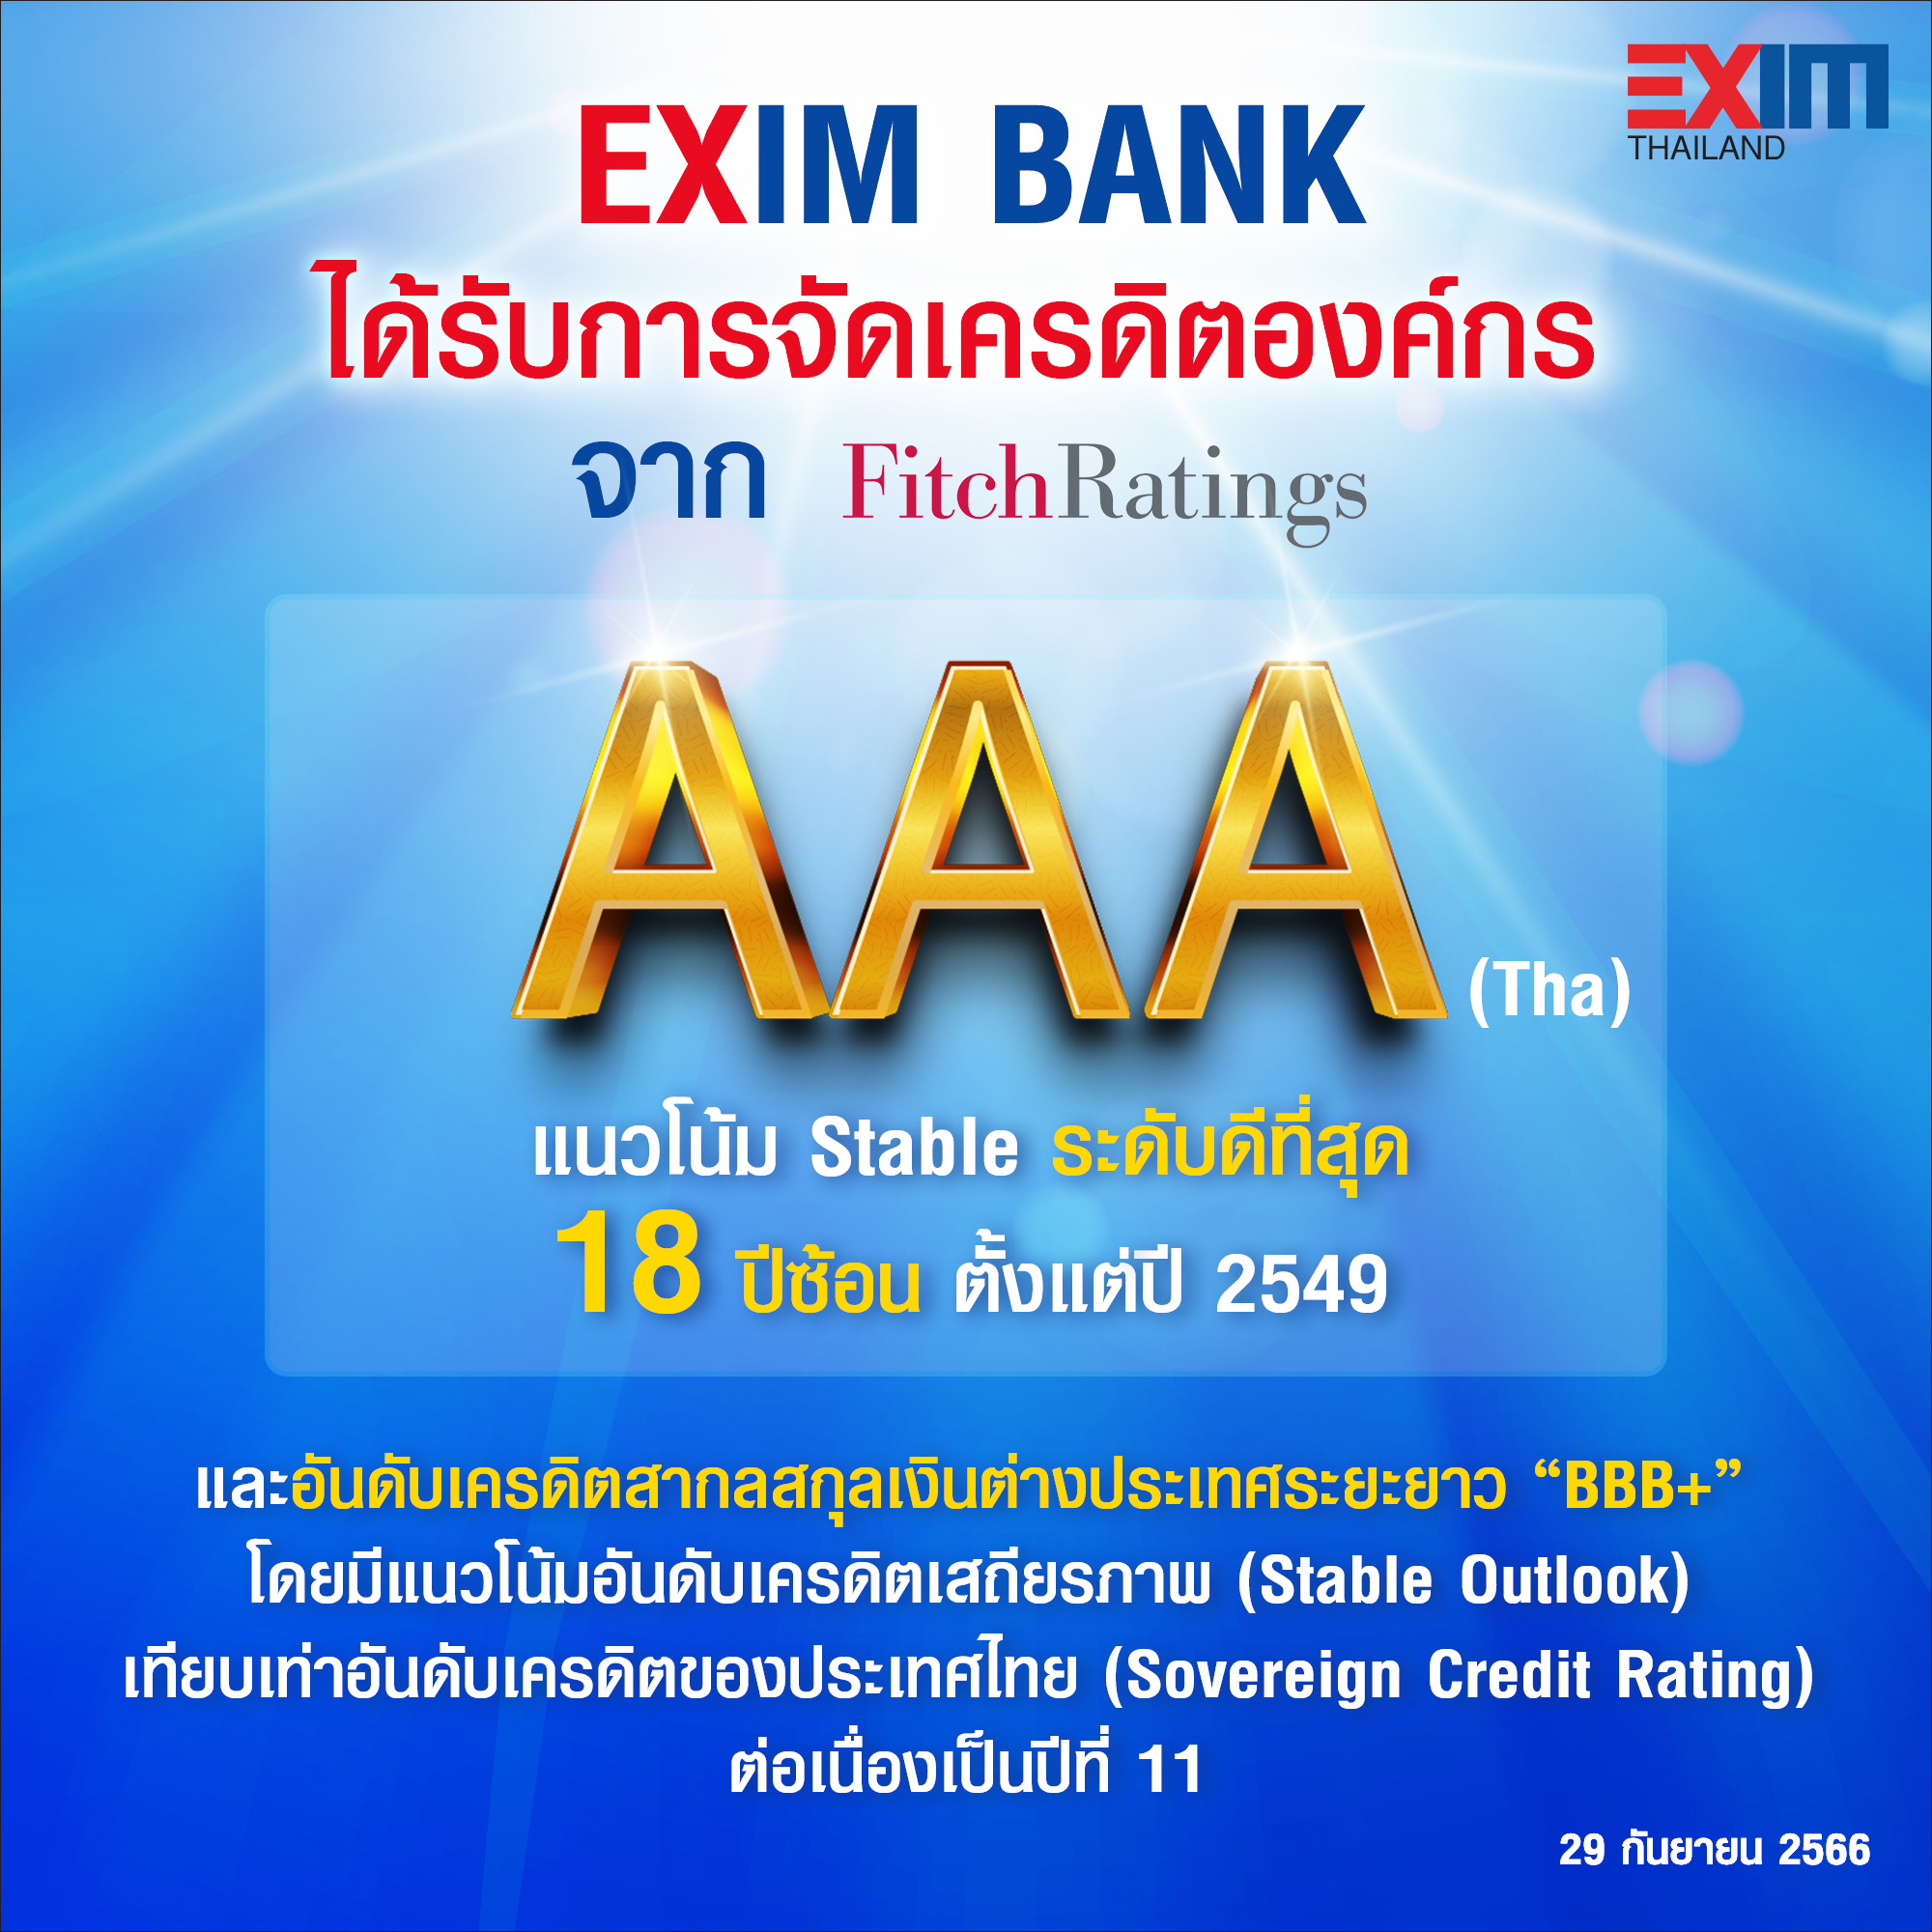 EXIM BANK โชว์สถานะการเงินแข็งแกร่งอันดับเครดิต AAA (tha) ต่อเนื่องปีที่ 18